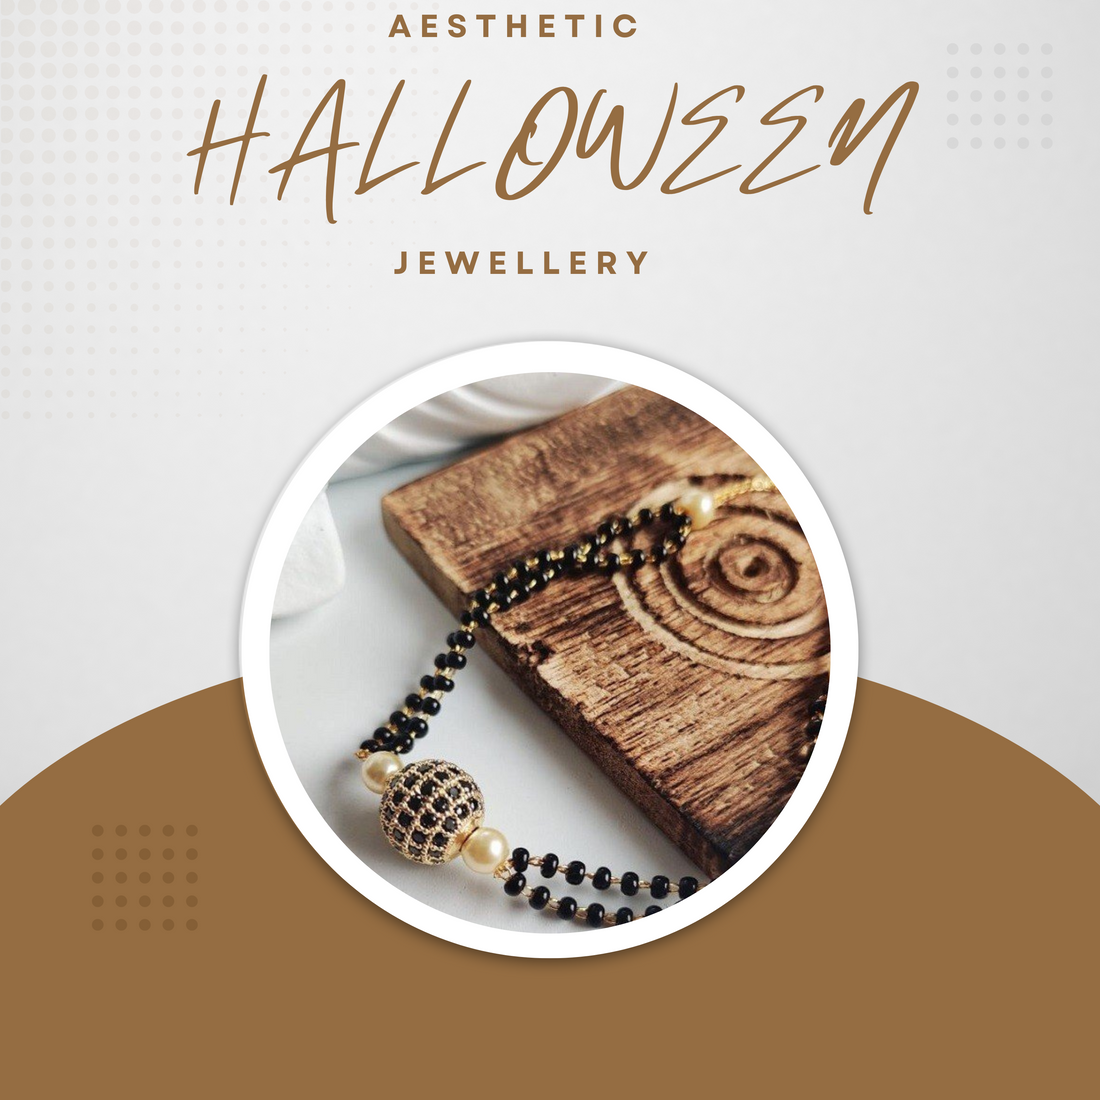 Halloween lookFive Jewellery items to complete your Halloween Look.